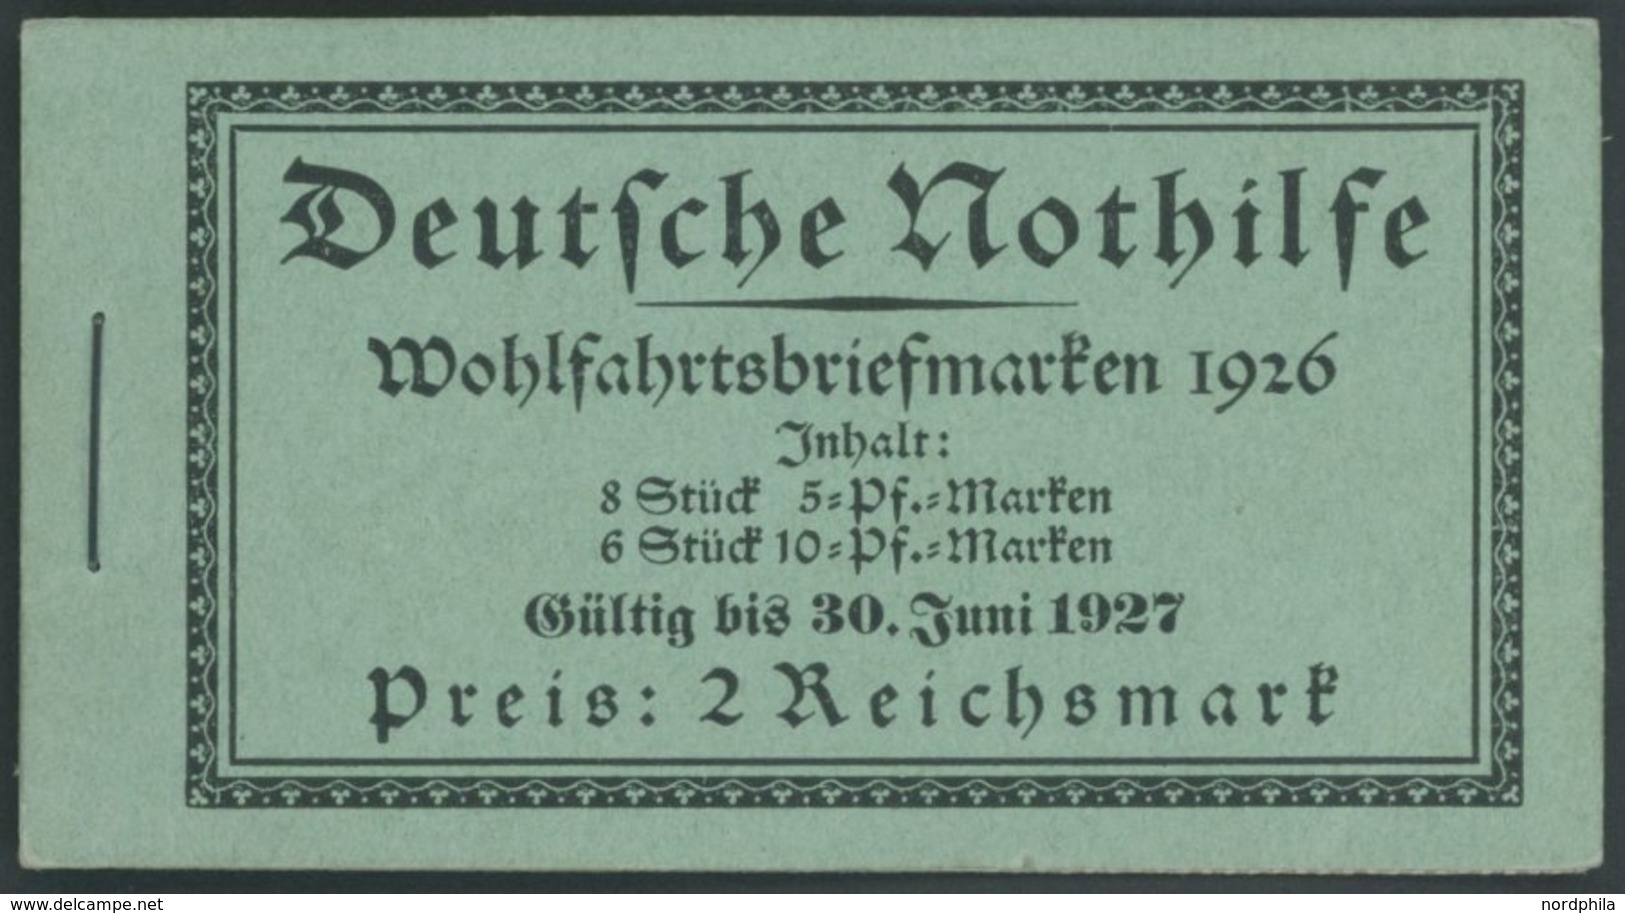 ZUSAMMENDRUCKE MH 23.1.2 **, 1926, Markenheftchen Nothilfe, StrL Ok, Pracht, Mi. 1400.- - Zusammendrucke